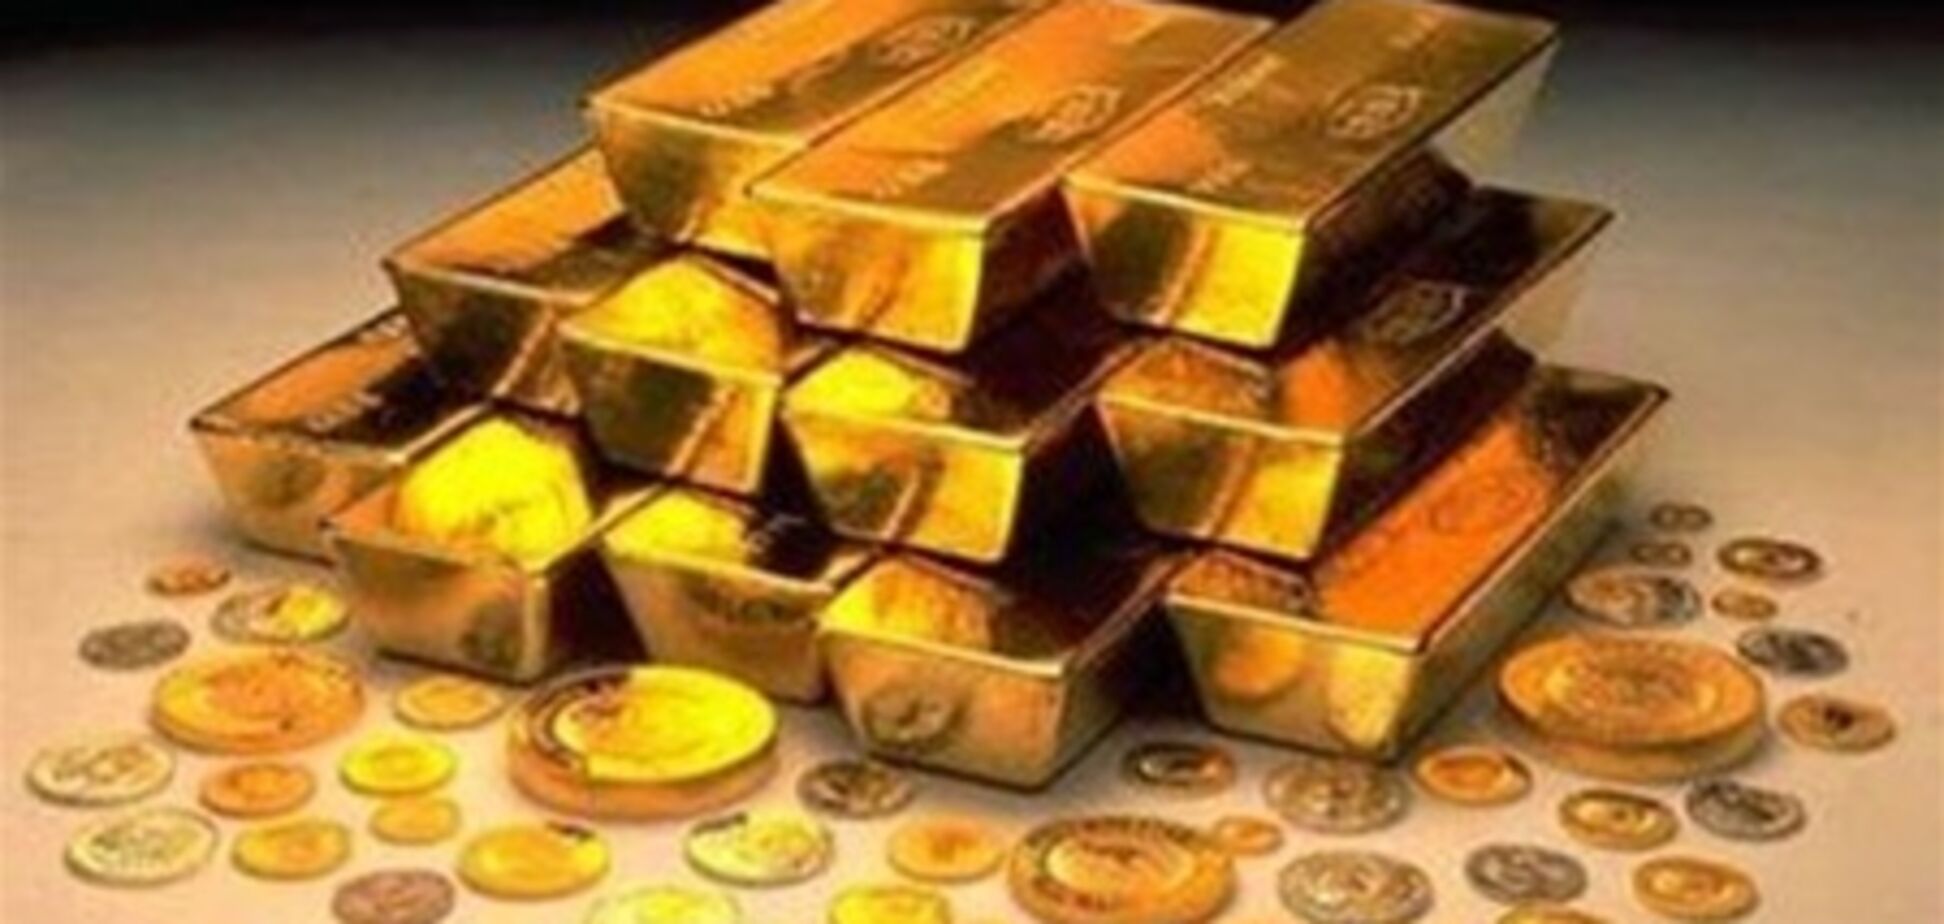 Эксперт: вкладывать в золото более 10-15% сбережений рискованно